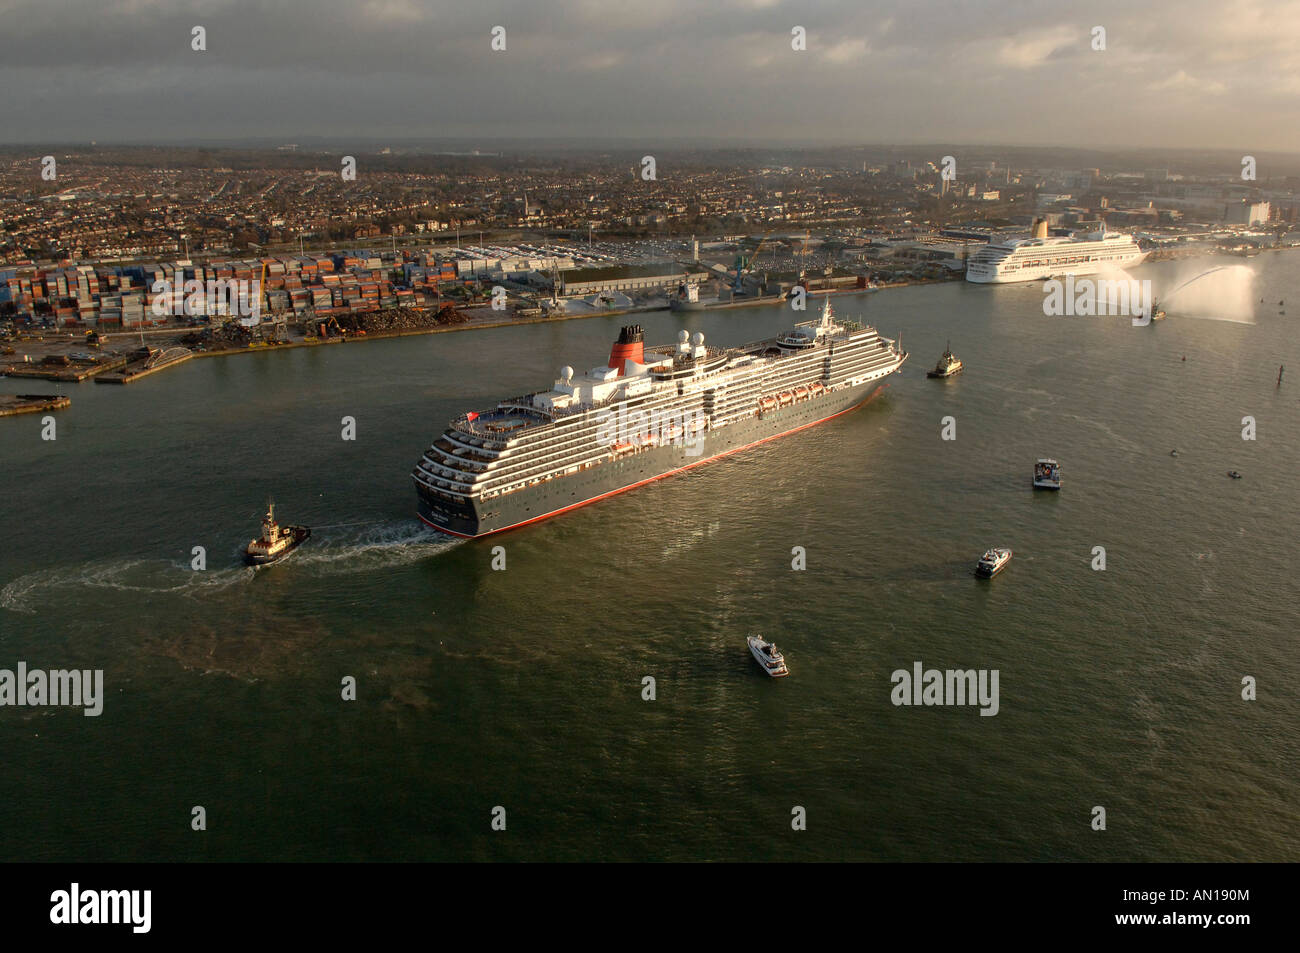 Ajout récent à Cunards flotte de paquebots luxueux la reine victoria entrant dans les eaux de Southampton au Royaume-Uni. Banque D'Images